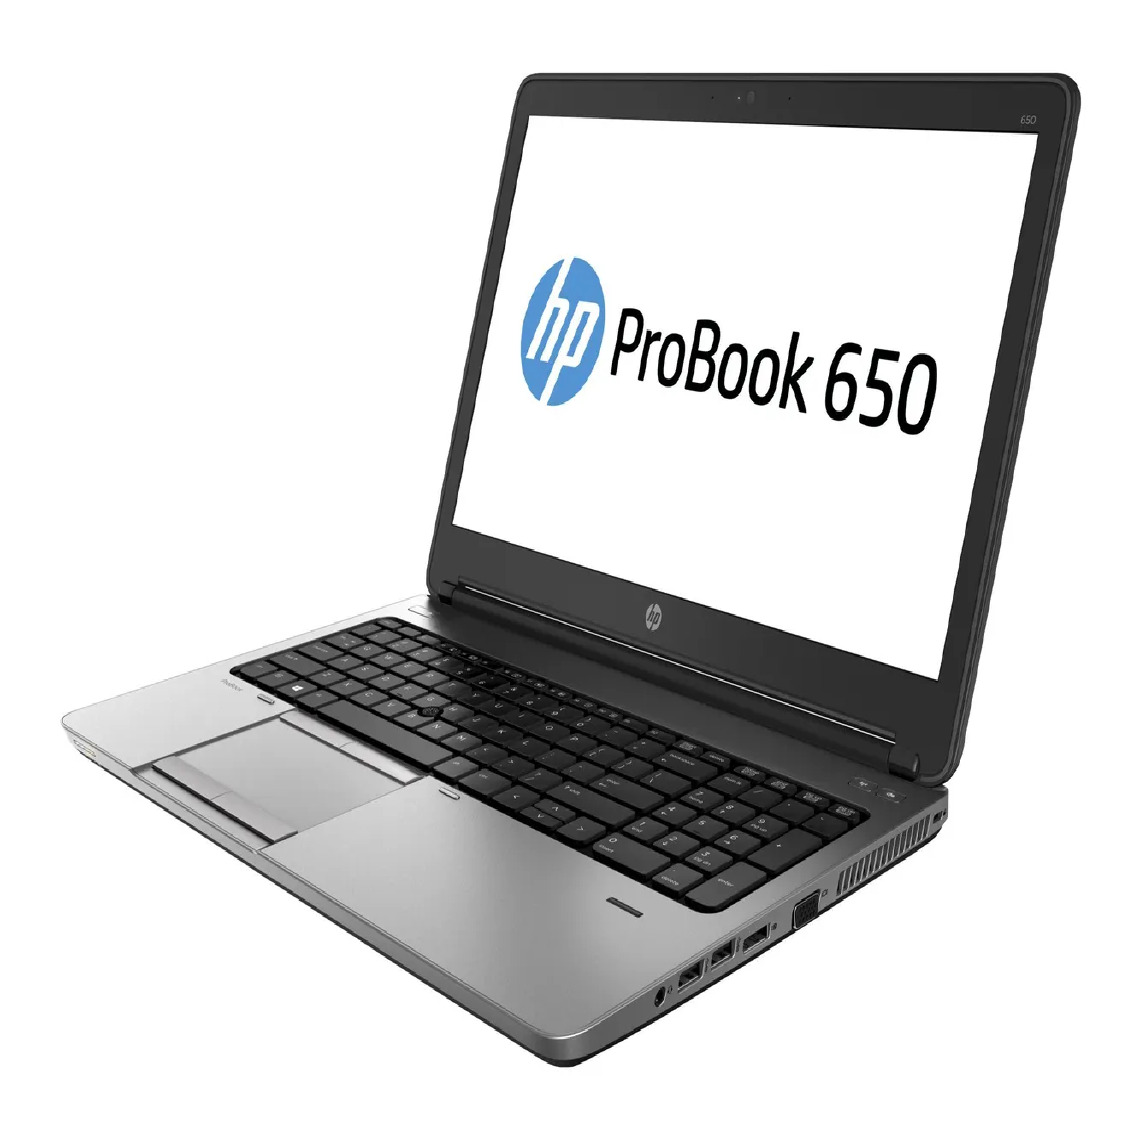 Hp - HP ProBook 650 G1 i5-4200M 8Go 128Go SSD 15.6'' Win 10Pro - PC Portable